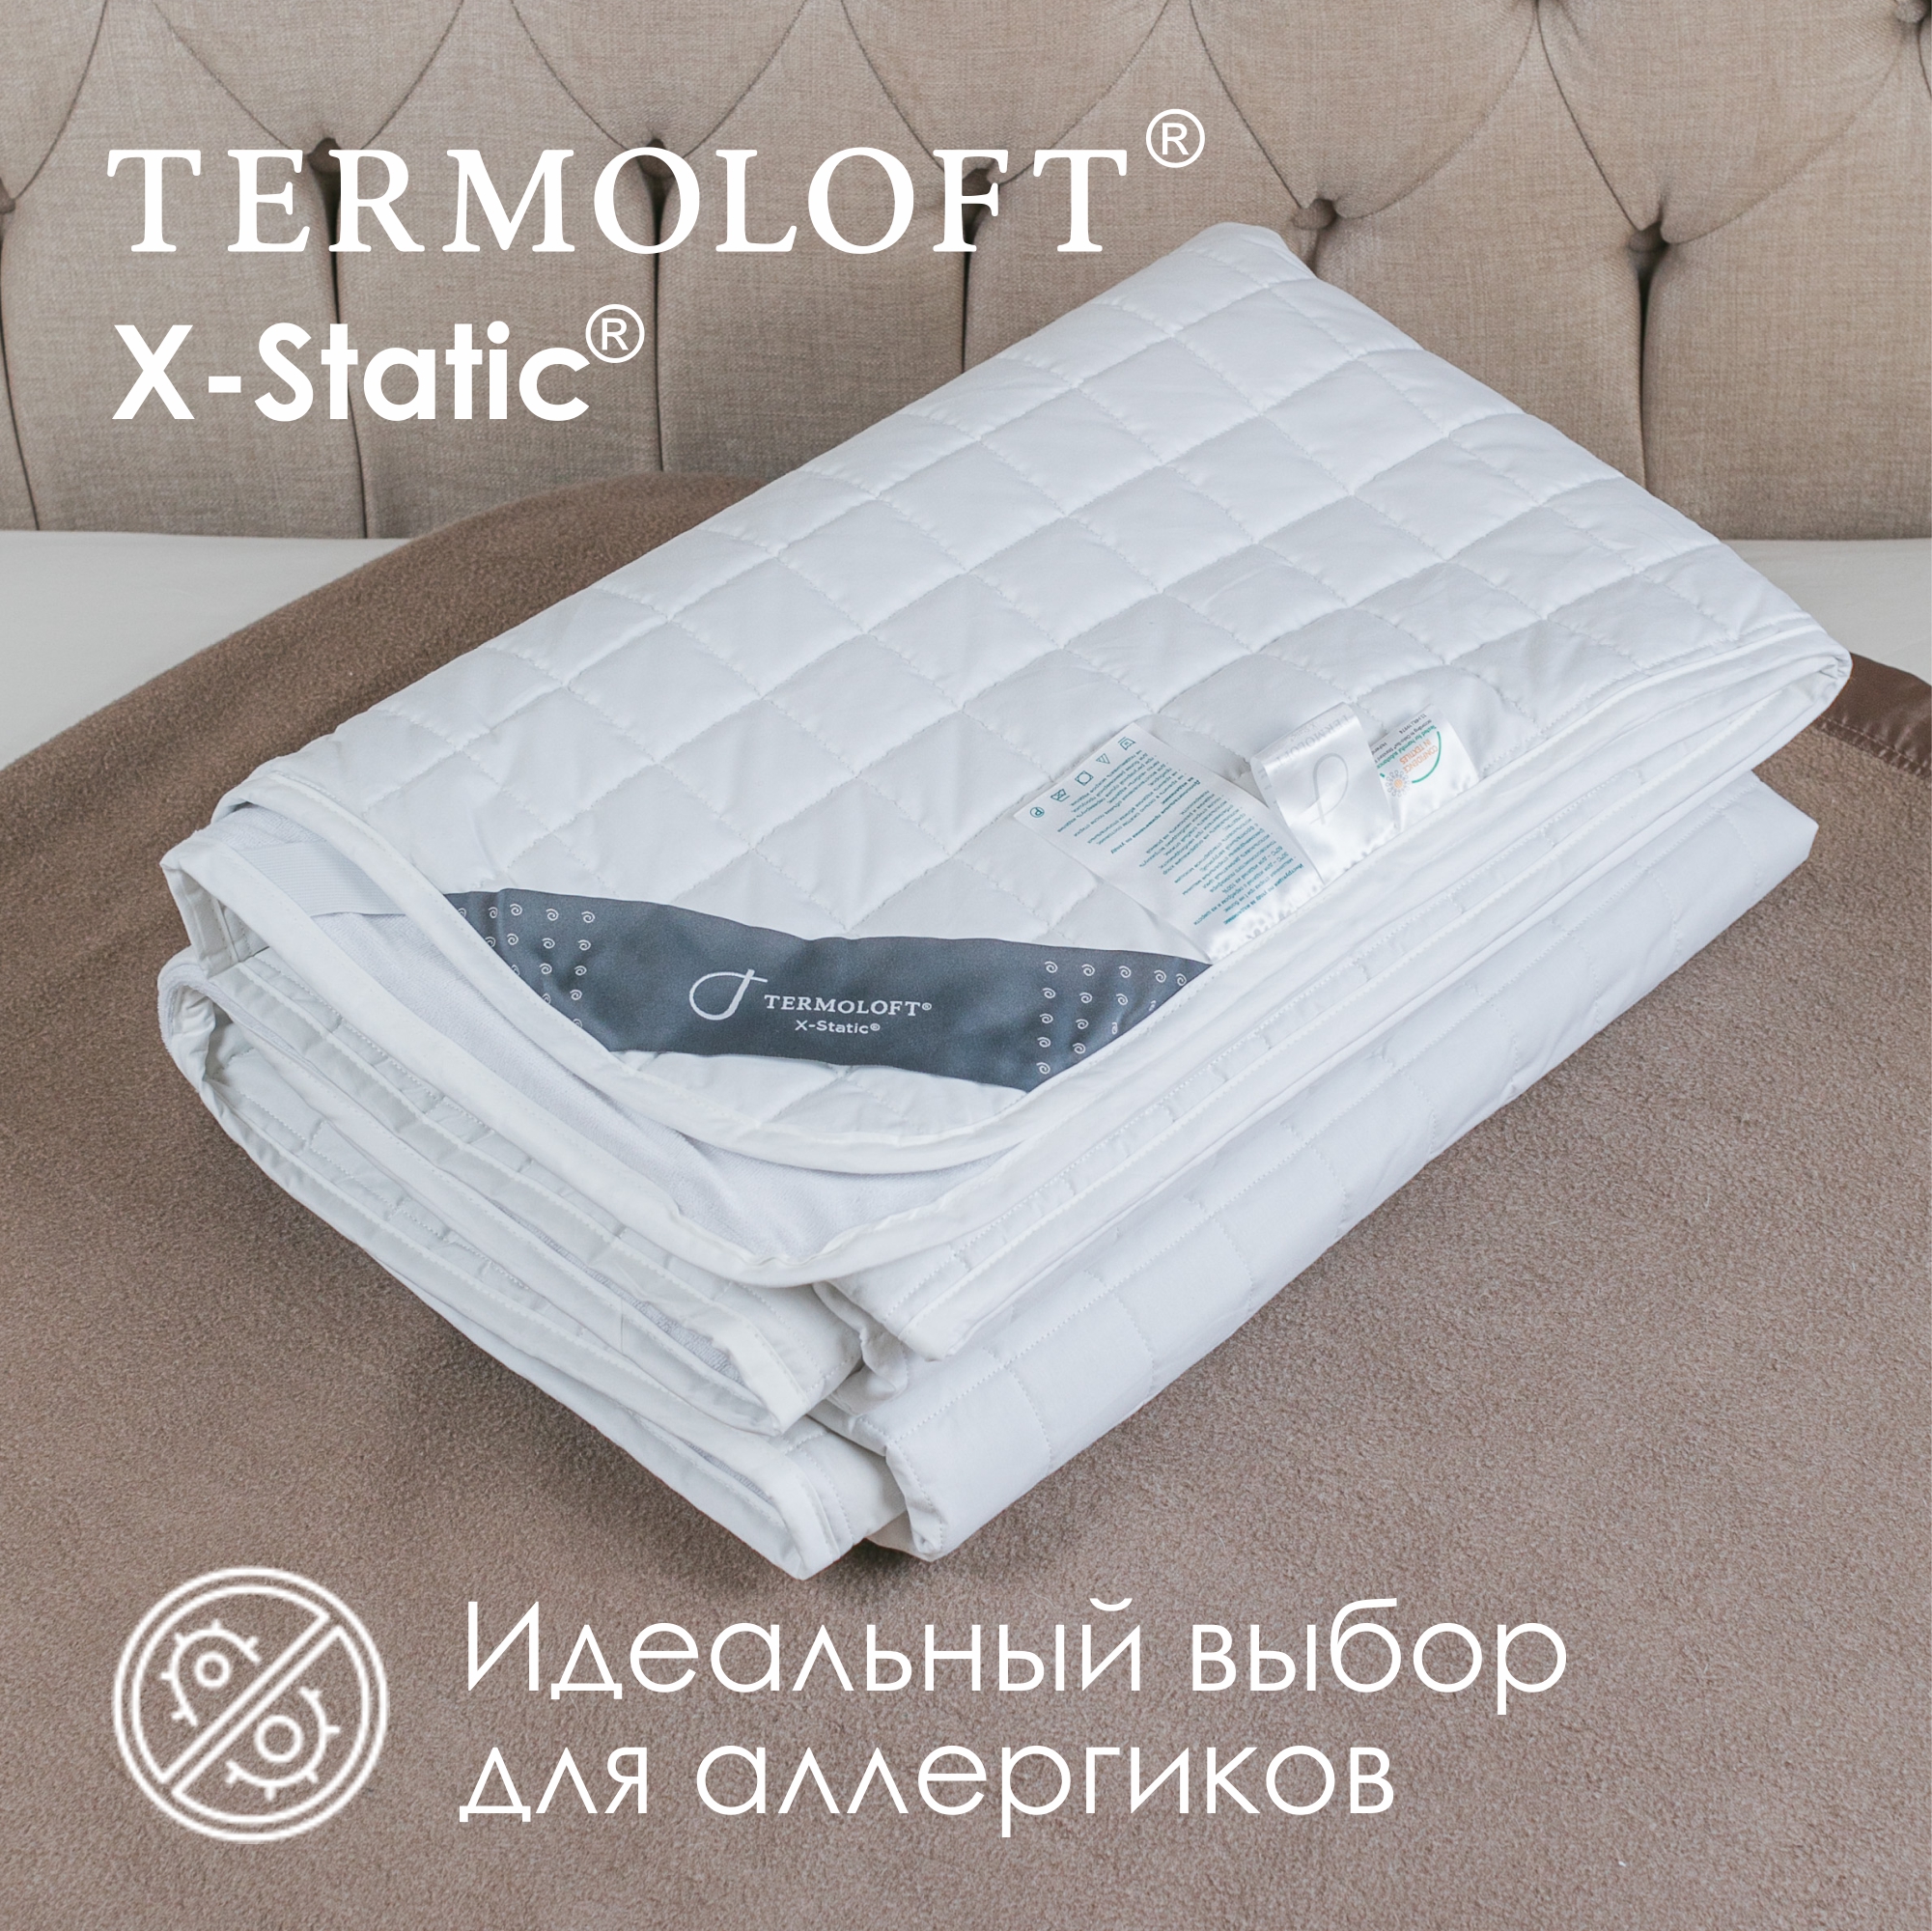 Наматрасник Termoloft X-Static с волокнами серебра 140х200 - фото 3